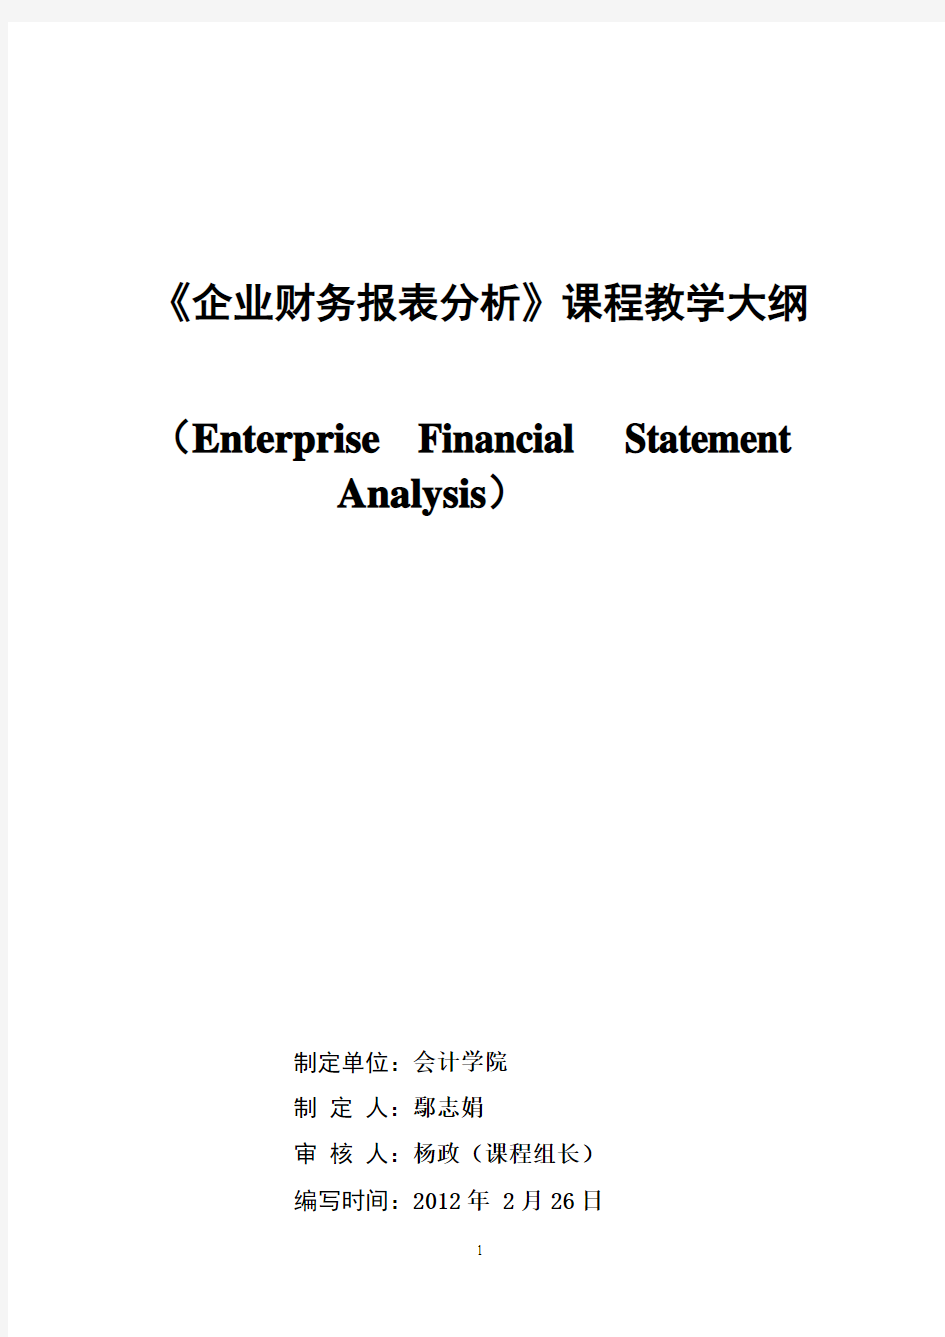 2012《财务报表分析》课程教学大纲(2学分)0303